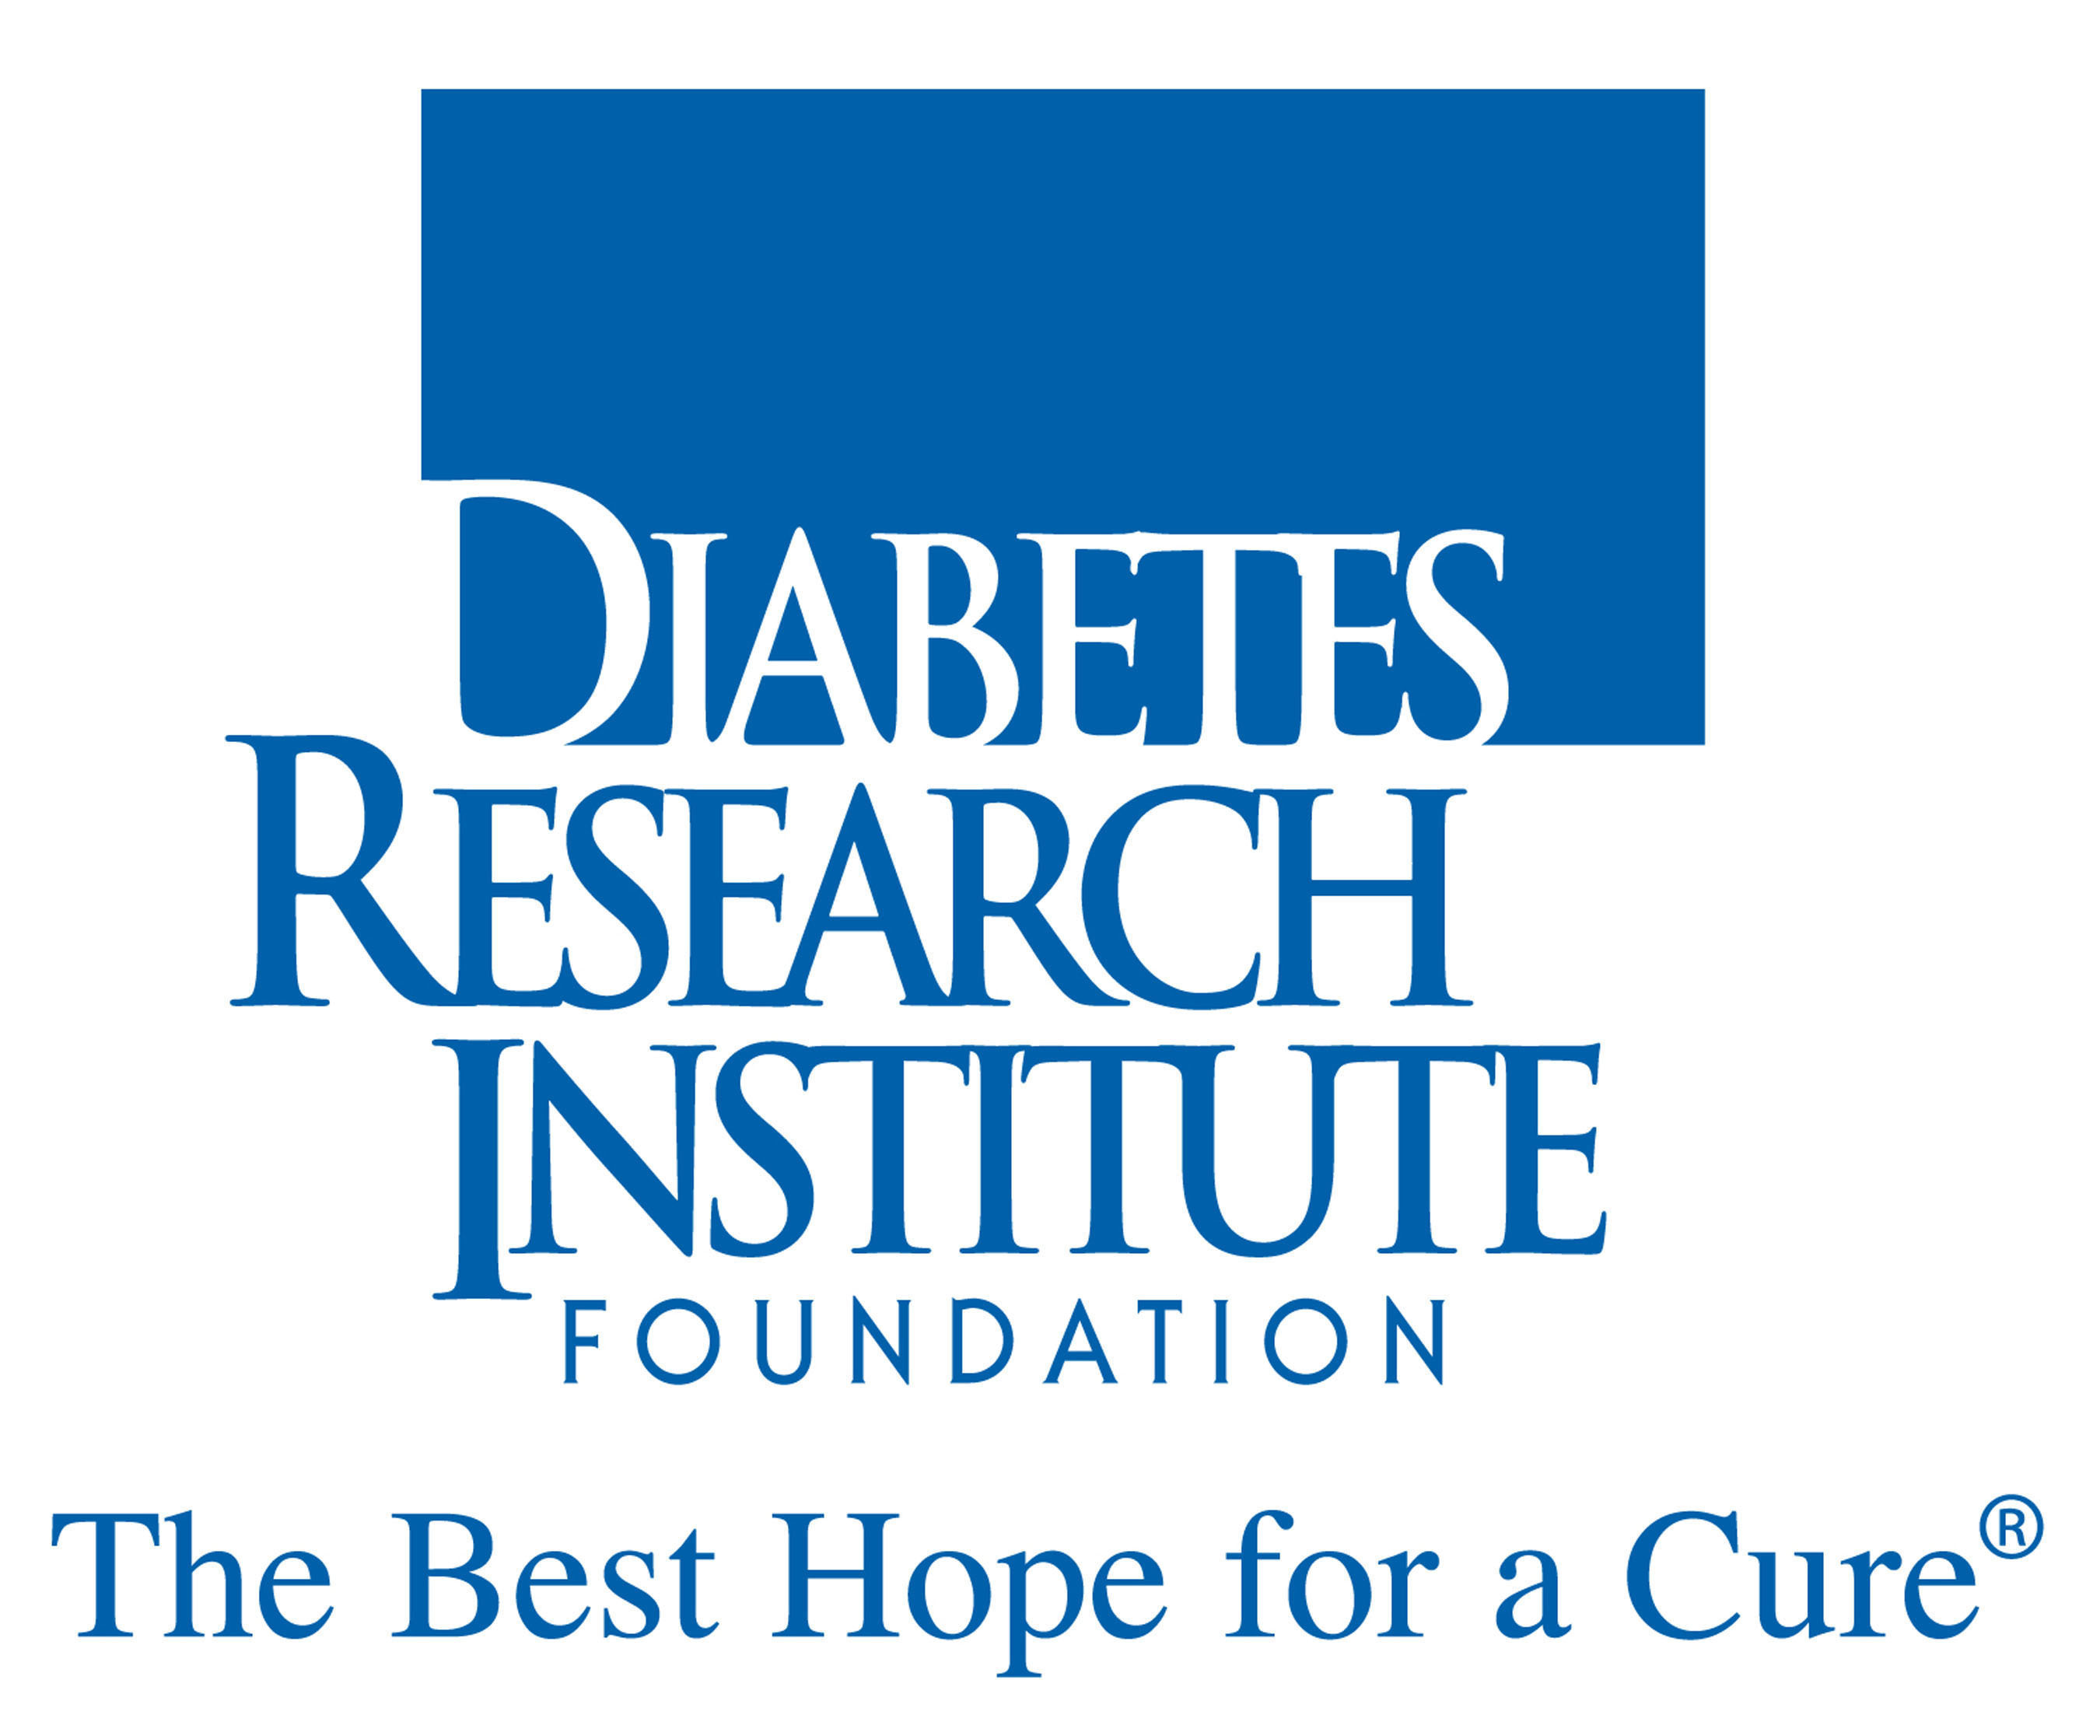 Diabetes Research Institute logo. (PRNewsFoto/Diabetes Research Institute Foundation) (PRNewsFoto/Diabetes Research Institute F...)